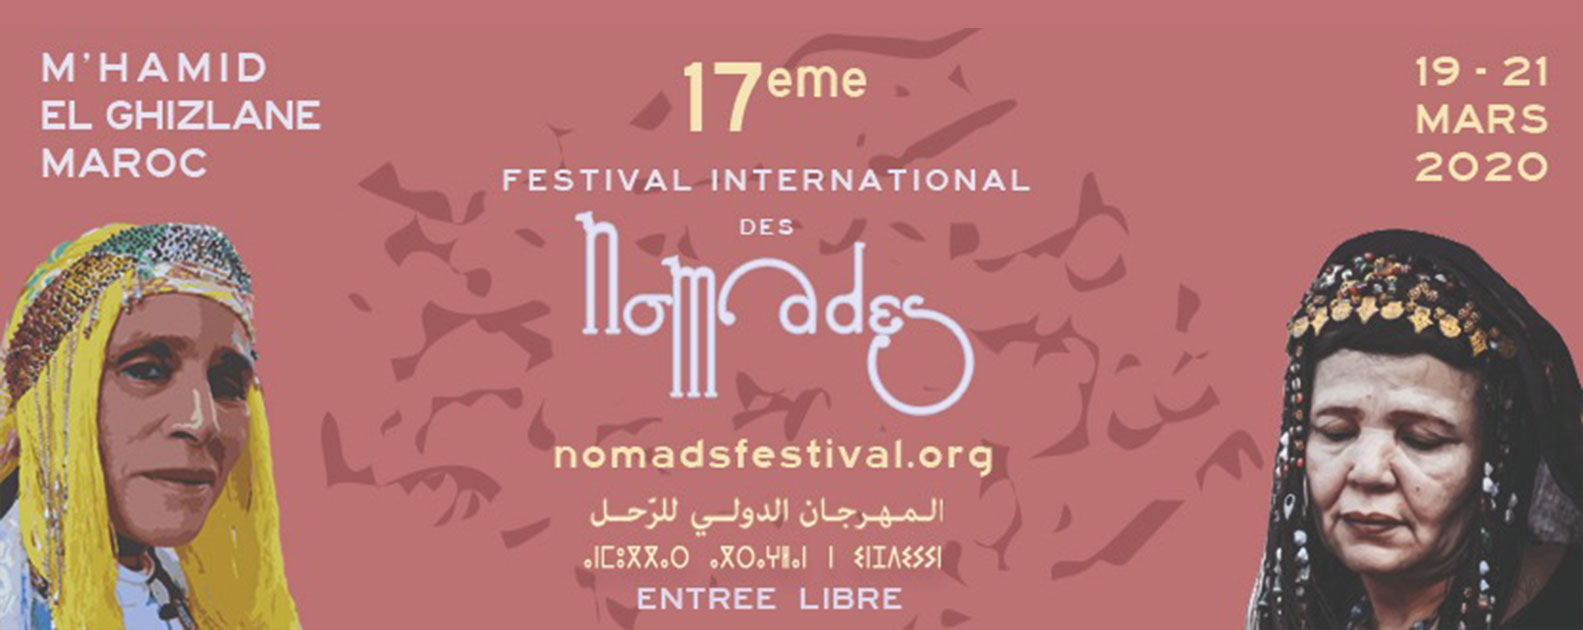 Festival internacional de nómadas